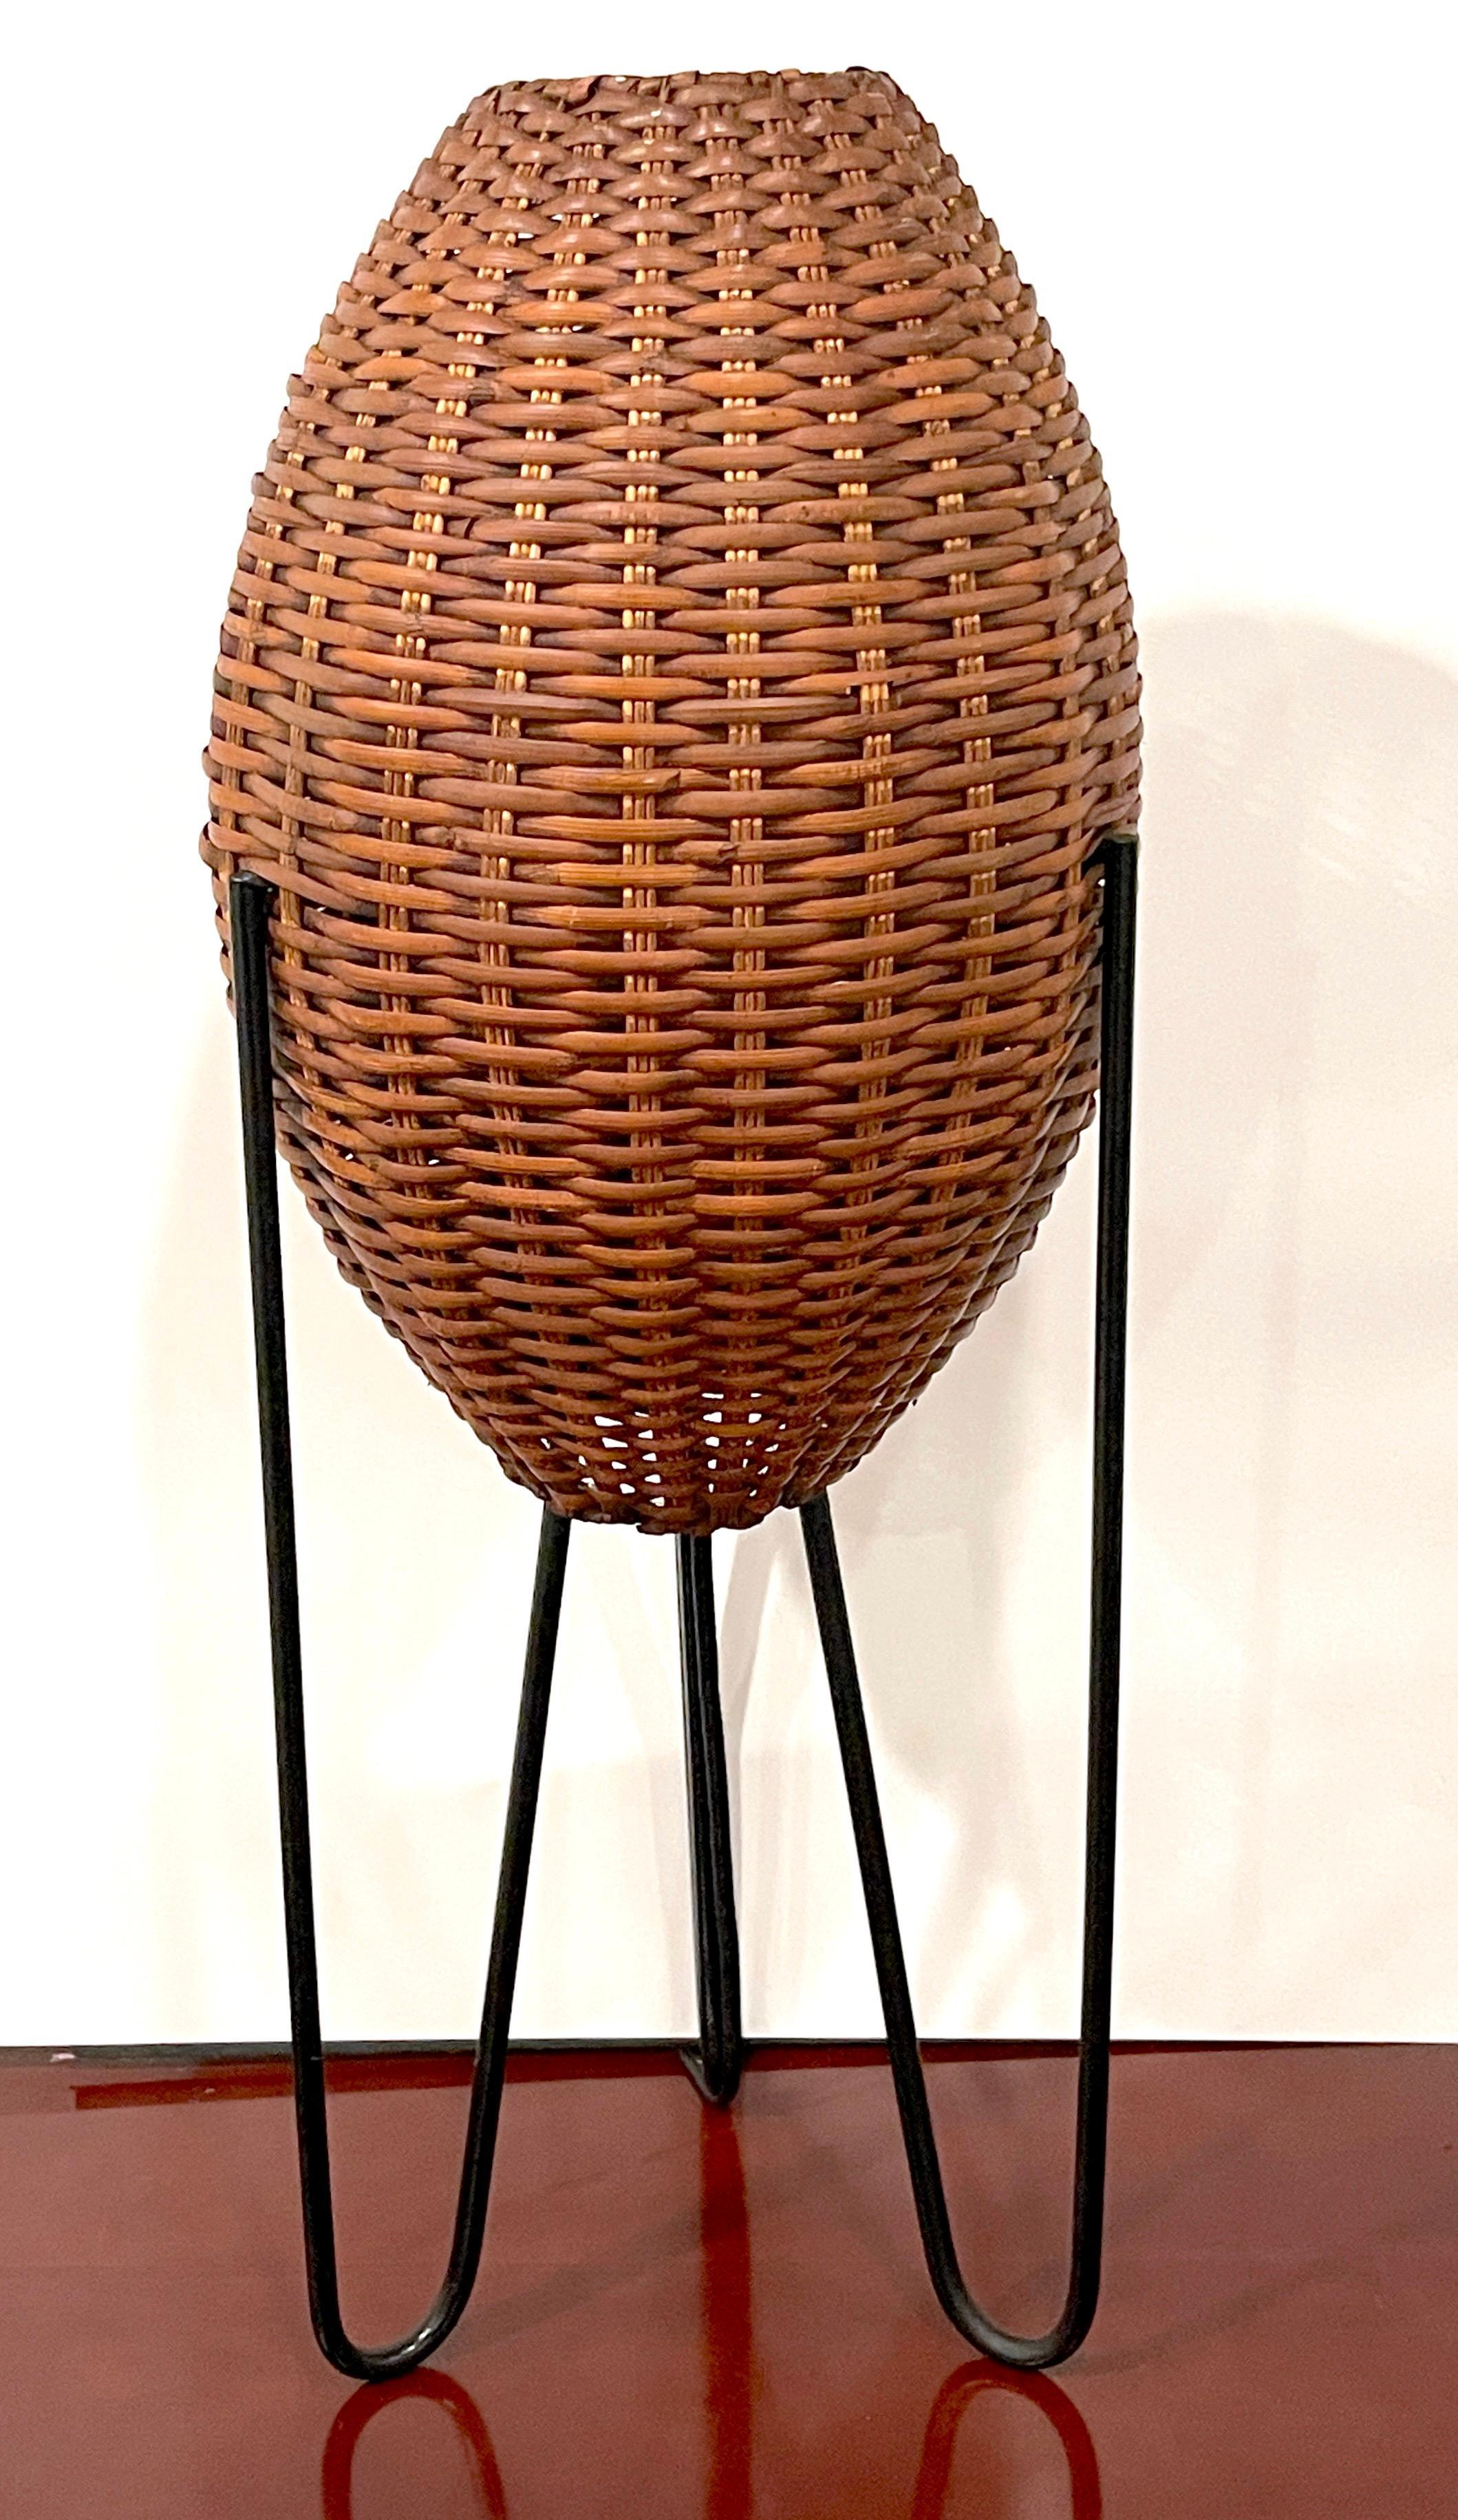 Lampe de table 'Beehive' en osier de Paul Mayen, circa 1965
Conçu et produit par Paul Mayen

Lampe de table 'Beehive' en osier, circa 1965, conçue et produite par le célèbre designer Paul Mayen. D'une hauteur de 27 pouces, cette lampe conserve un